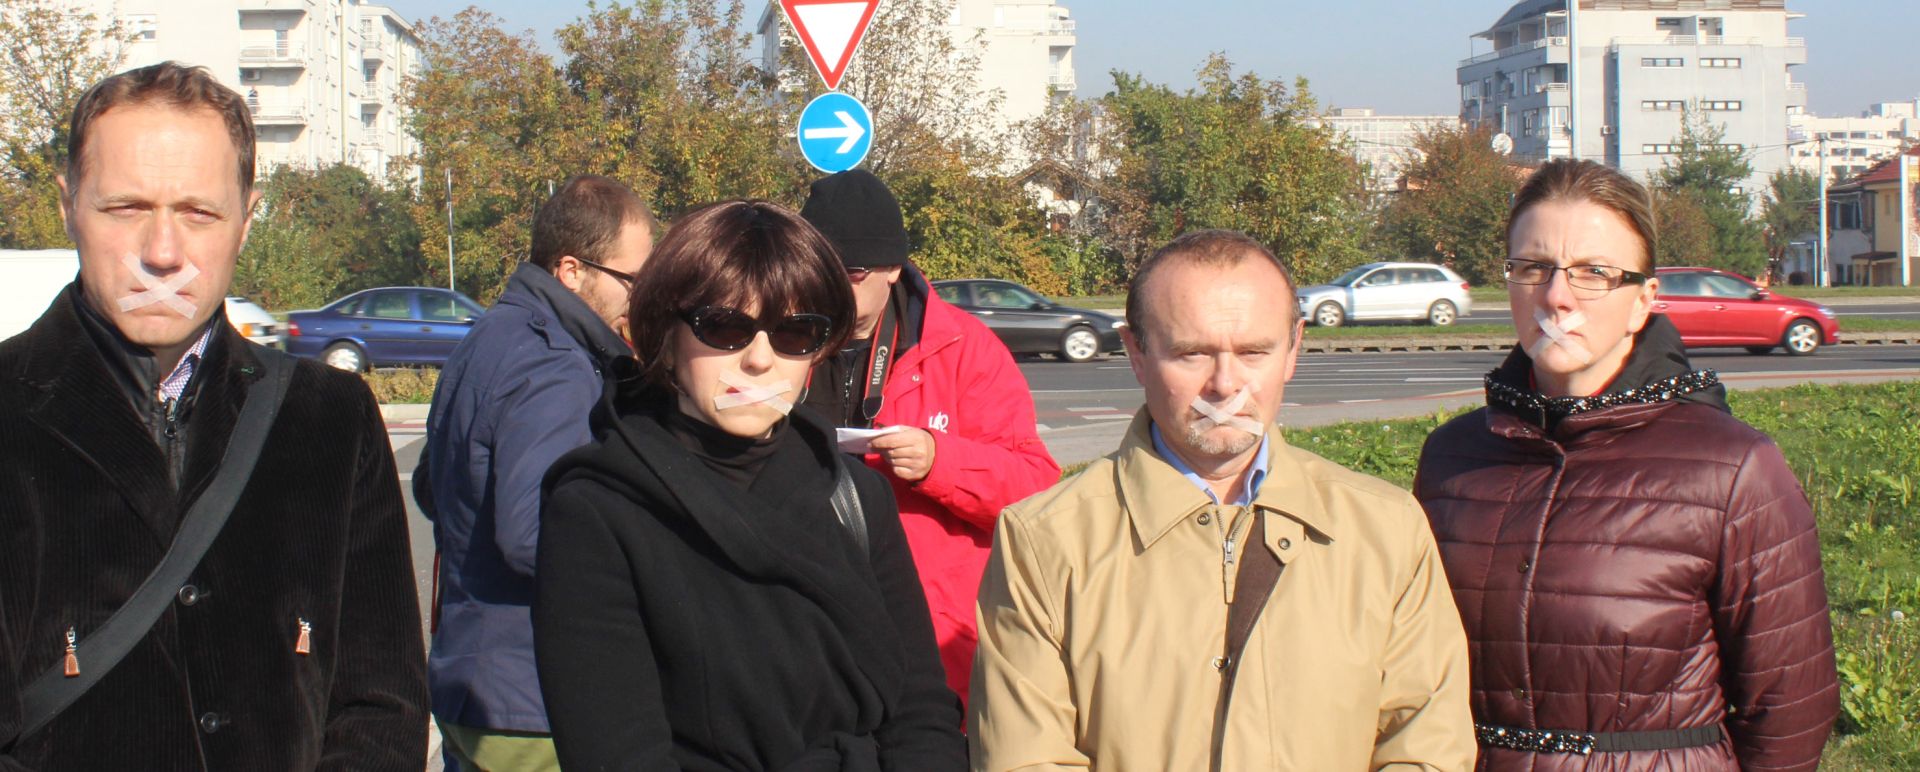 Zagreb, 3.11.2015.- ORaH je u utorak odrao "utljivu" konferenciju za novinare ispred zgrade HTV-a, na kojoj je priopæenje pod nazivom "Medijska blokada ORaH-a - Pretvara li se HTV u glasnik SDP-a i HDZ-a i njihovih satelita" proèitao glasnogovornik stranke Dean arèeviæ, dok su predsjednica ORaH-a Mirela Holy i èlanovi stranaèkog vodstva èitanje priopæenja popratili s flasterima na ustima.
foto HINA/ ORaH/ ua